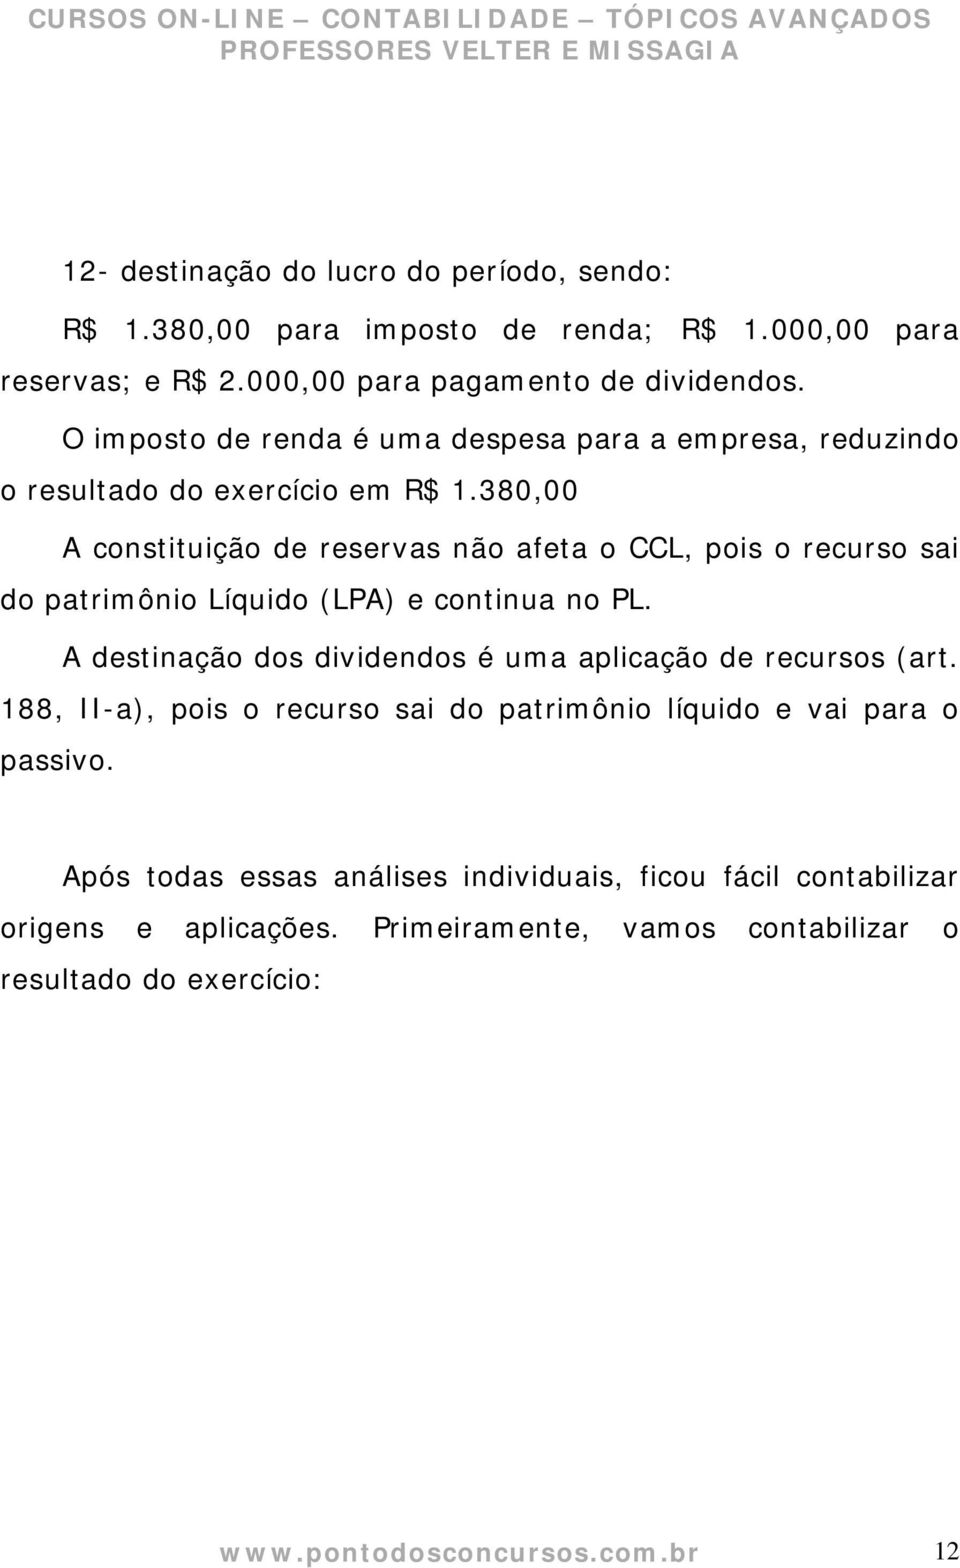 380,00 A constituição de reservas não afeta o CCL, pois o recurso sai do patrimônio Líquido (LPA) e continua no PL.